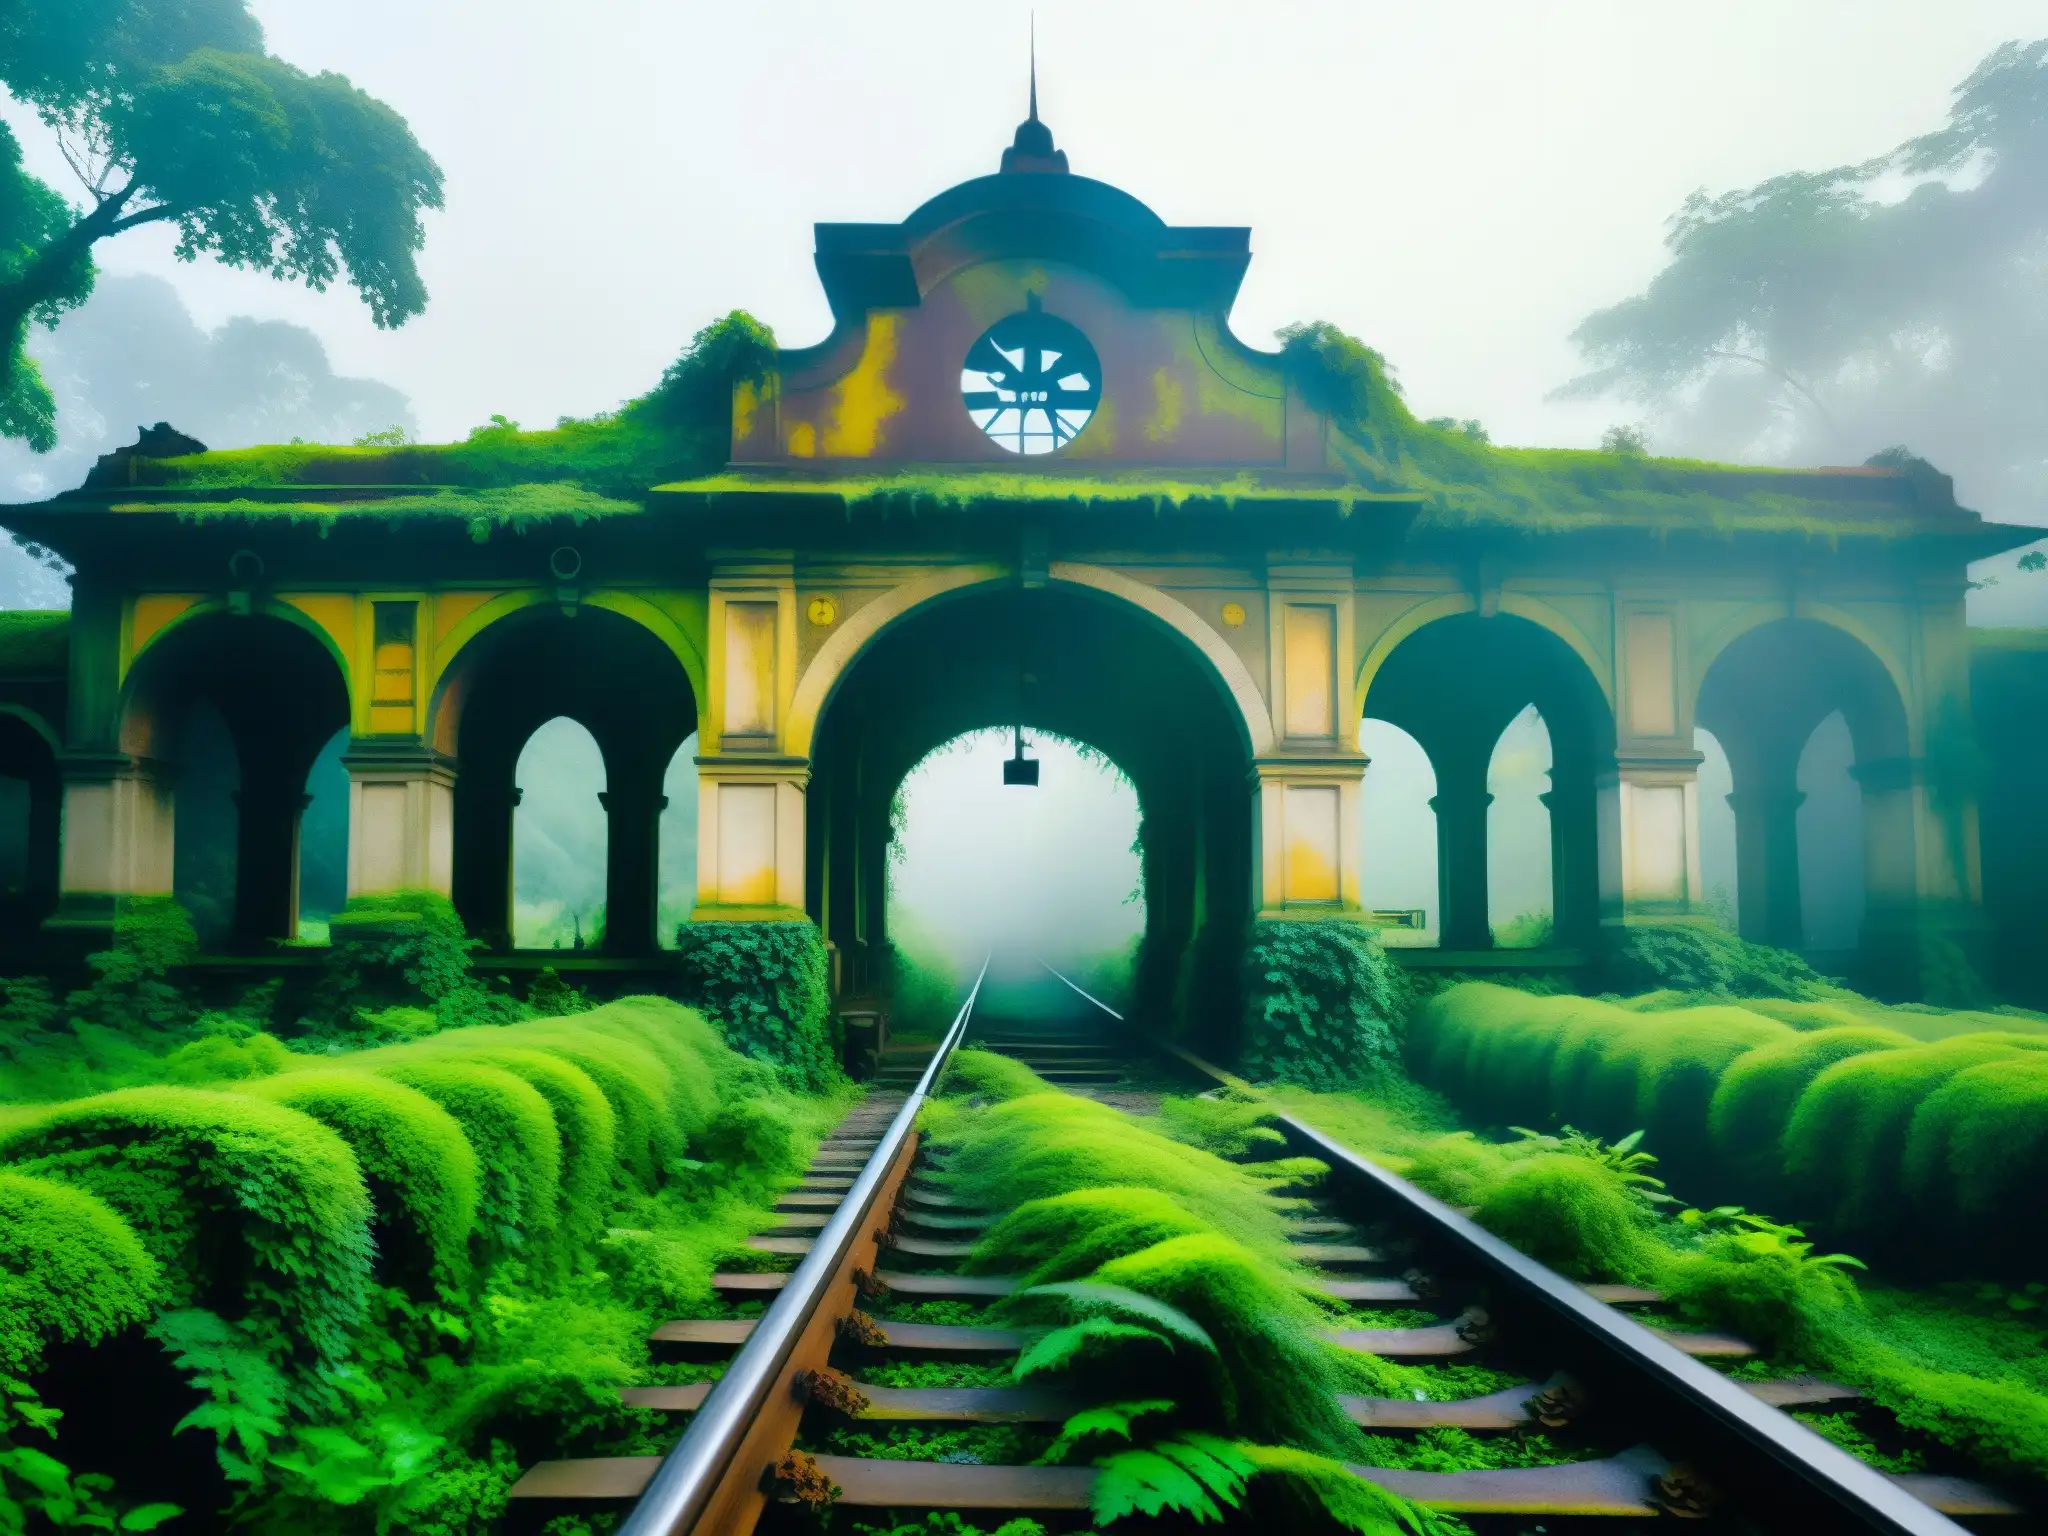 Estación de tren abandonada en la misteriosa jungla de Bengala, cubierta de enredaderas y musgo